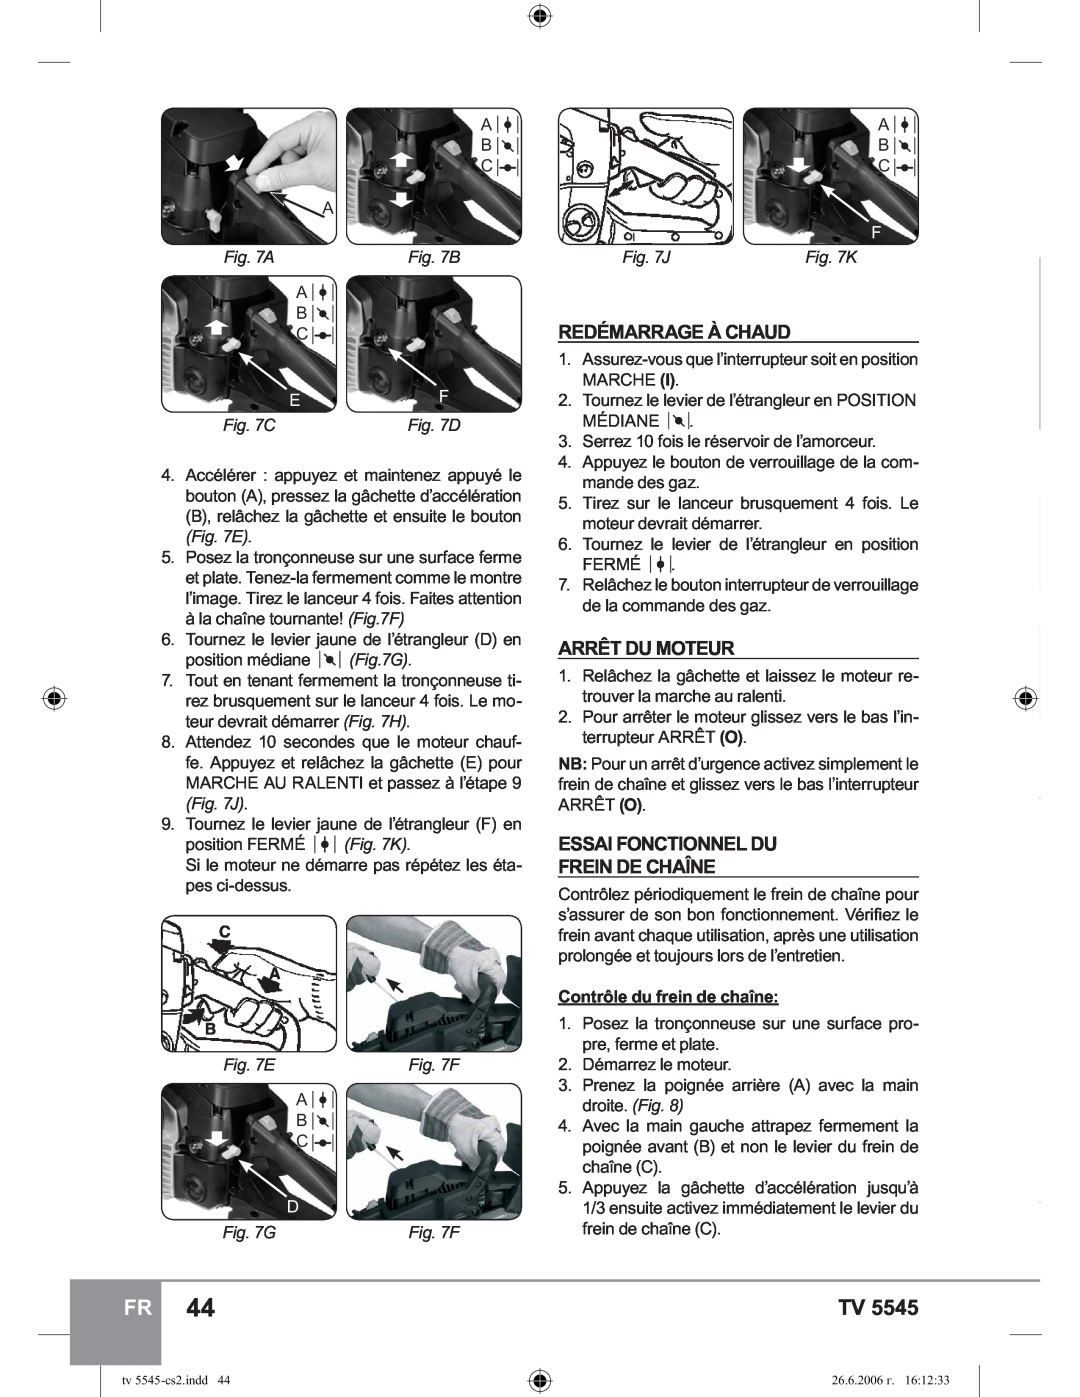 Sparky Group TV 5545 manual Redémarrage À Chaud, Arrêt Du Moteur, Essai Fonctionnel Du Frein De Chaîne, B, J, G 